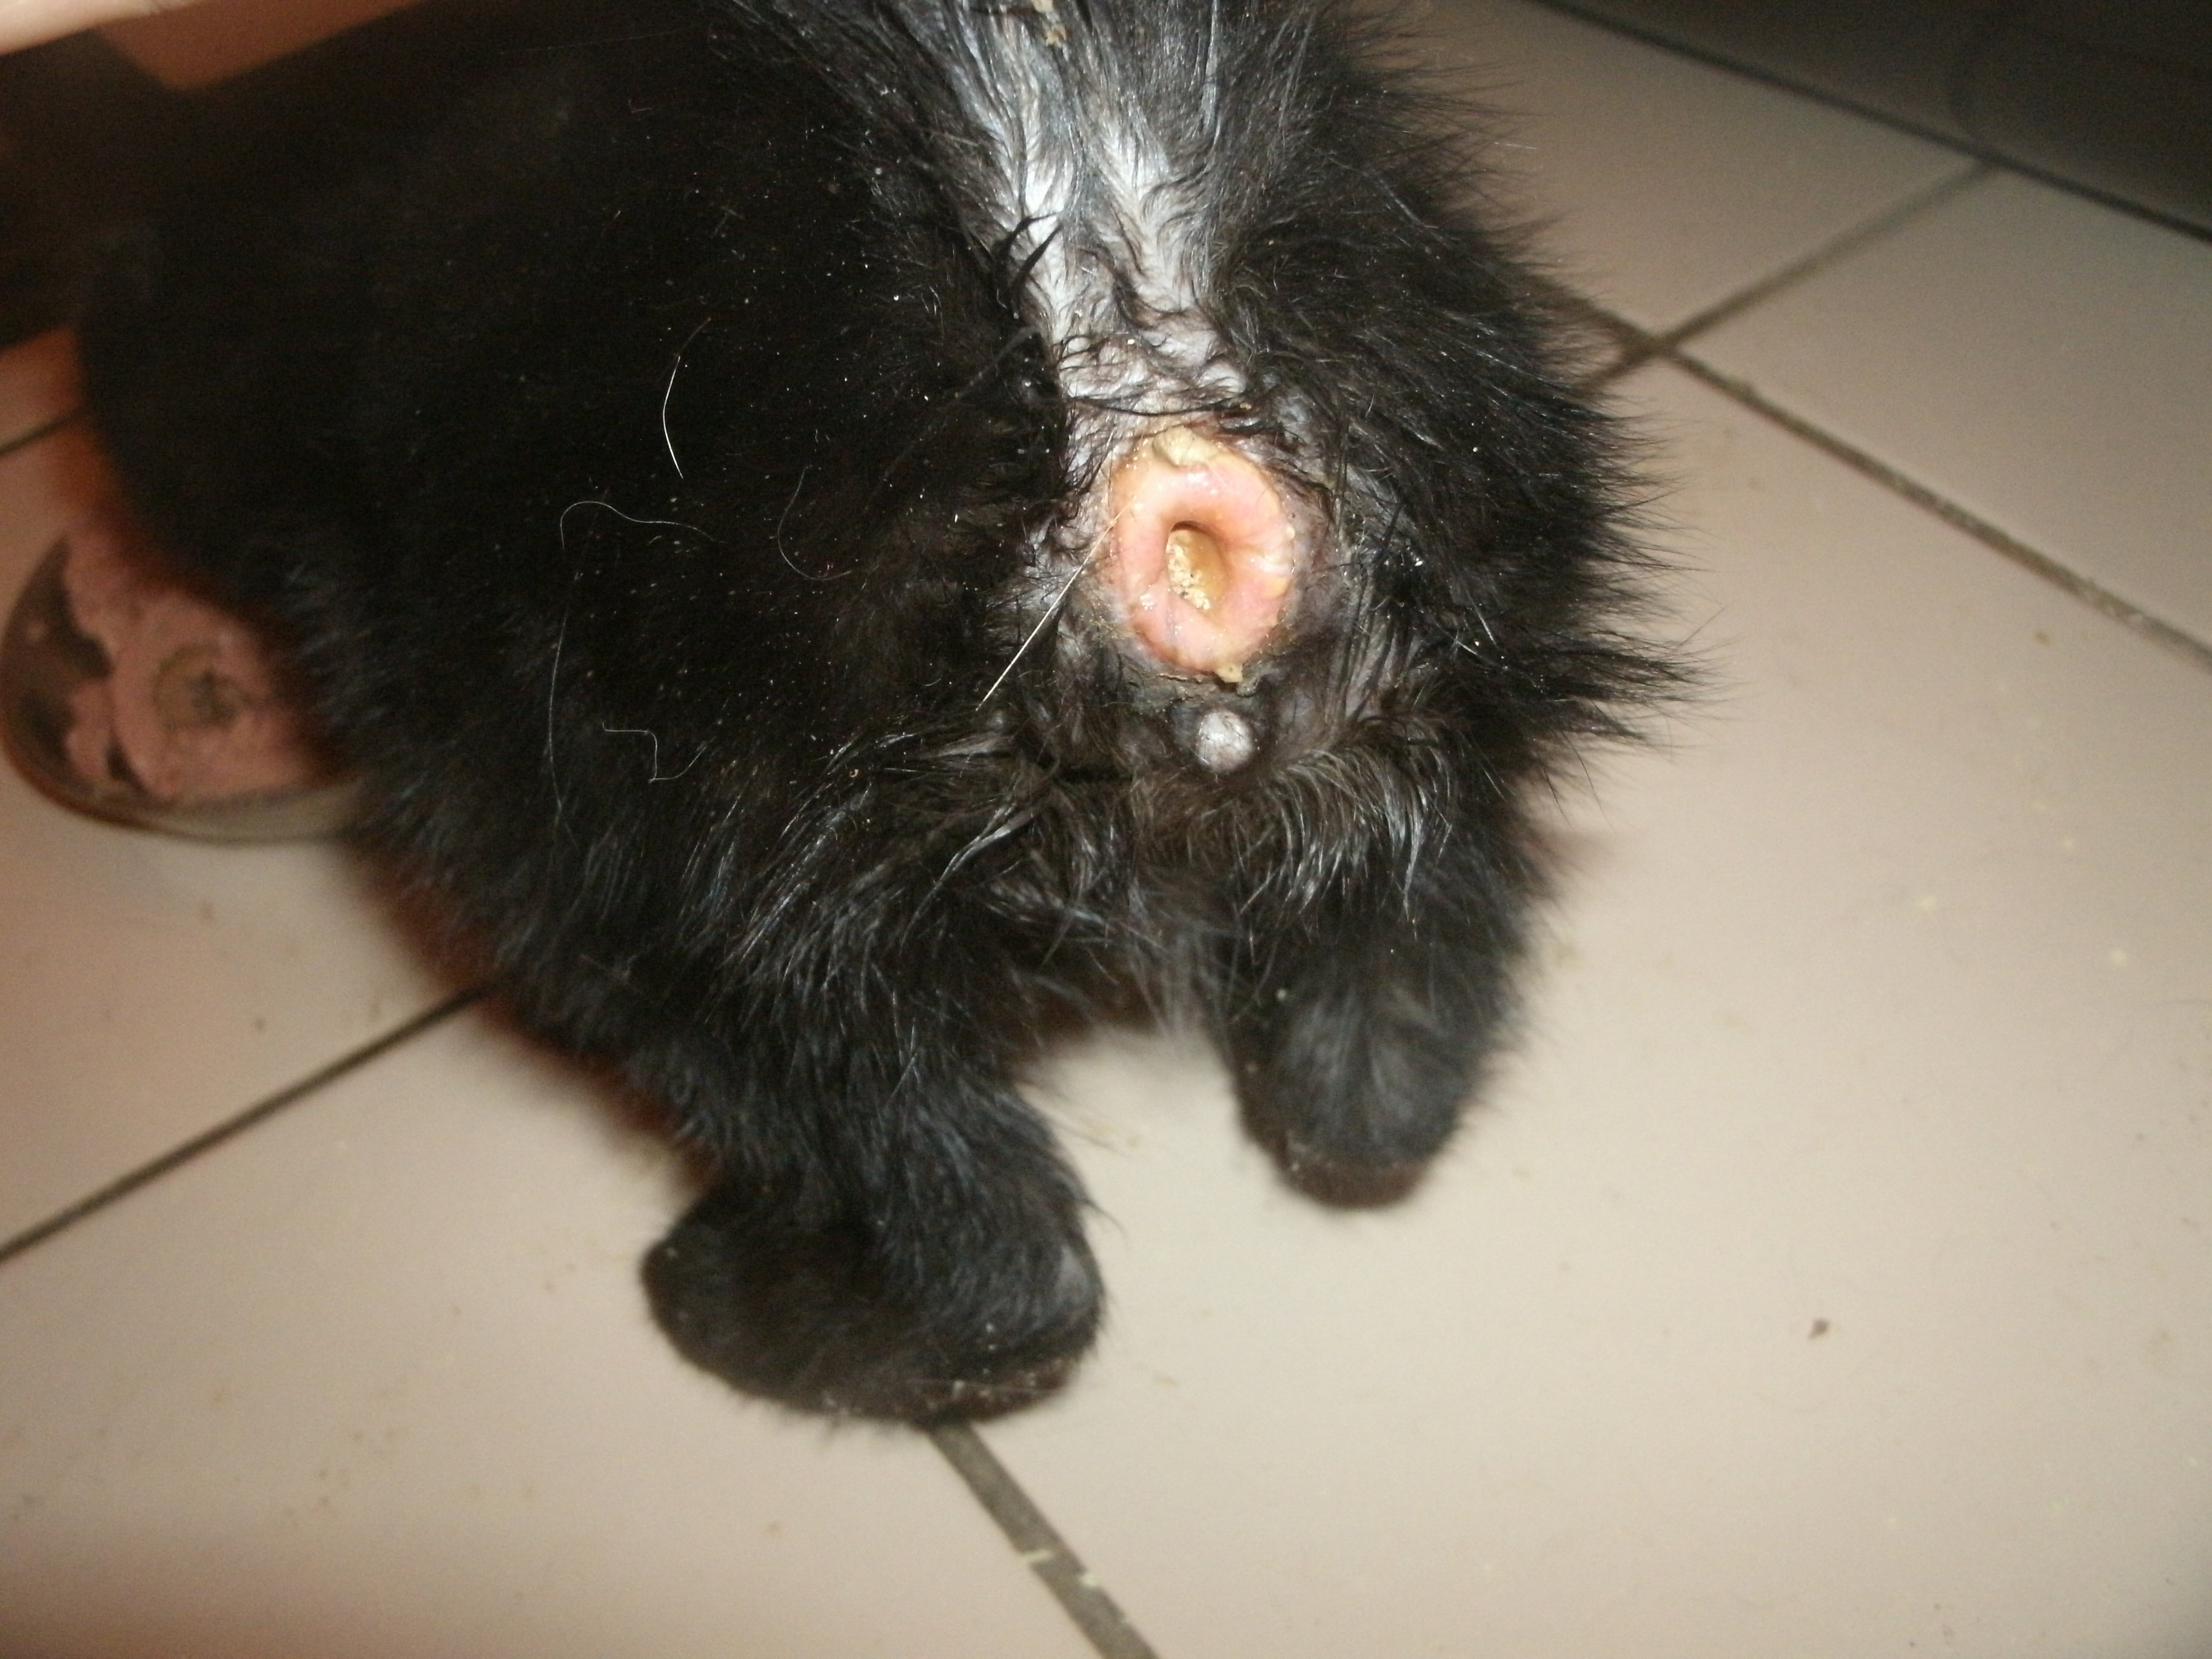 Cruauté animale: Un chat sodomisé et jeté aux WC, un chien brûlé vif